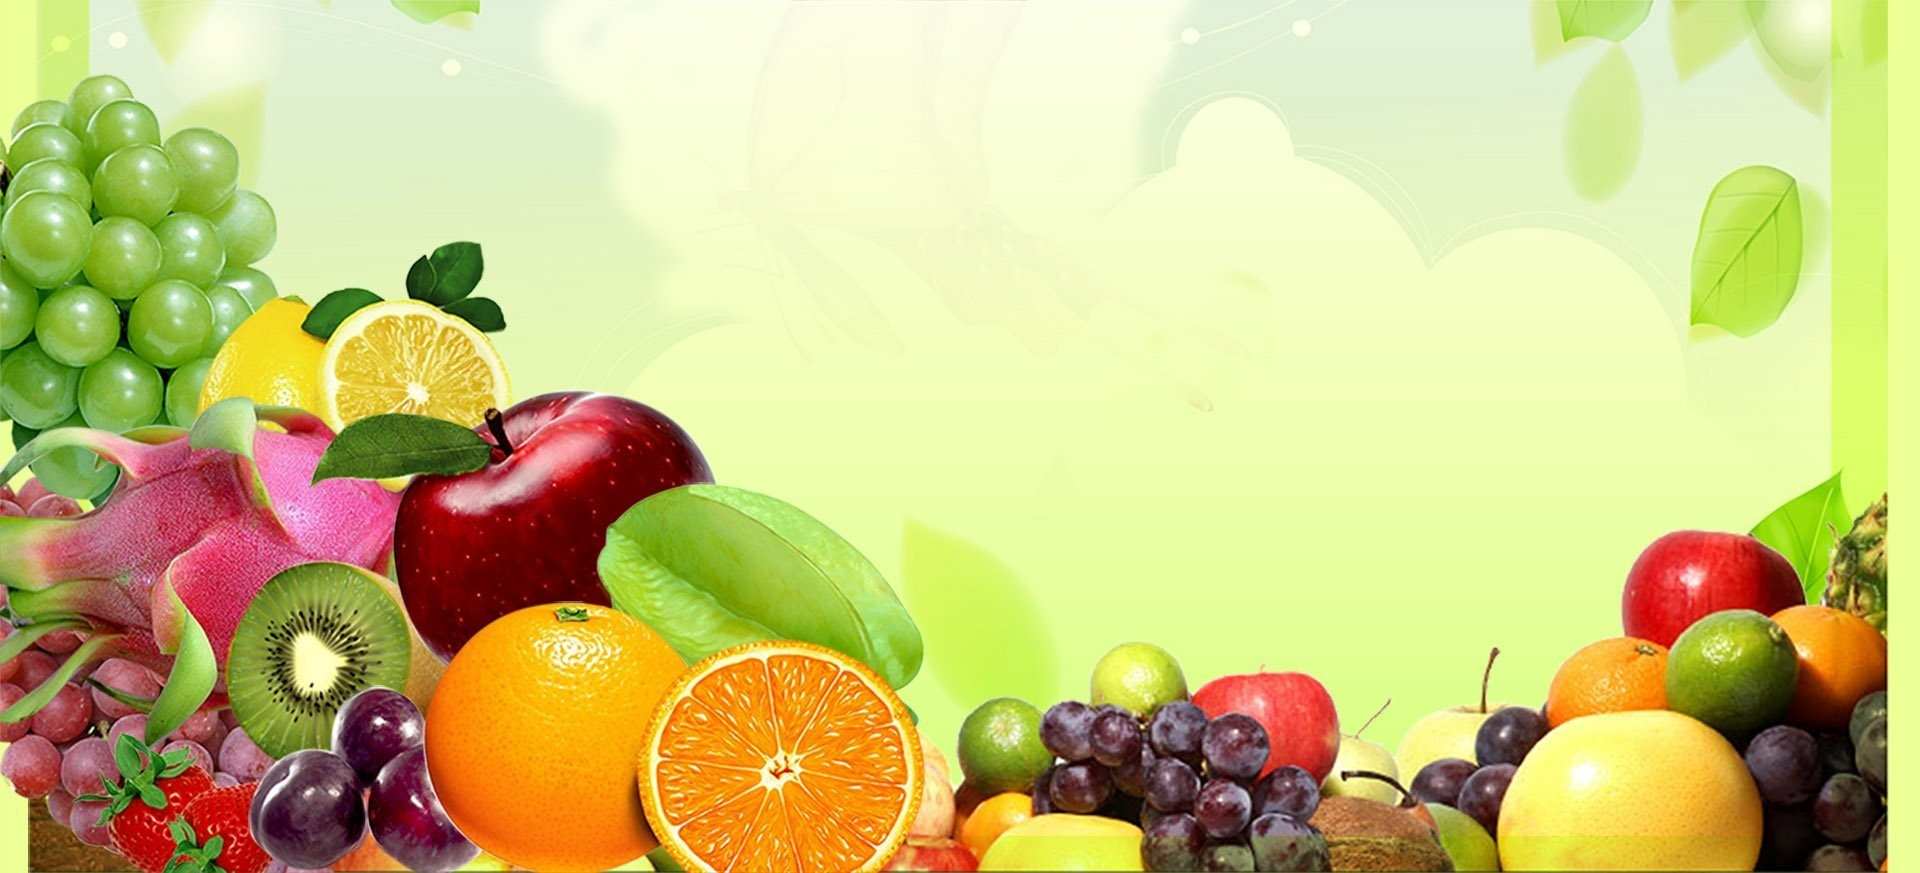 Картинки для детей с фруктами и овощами 012